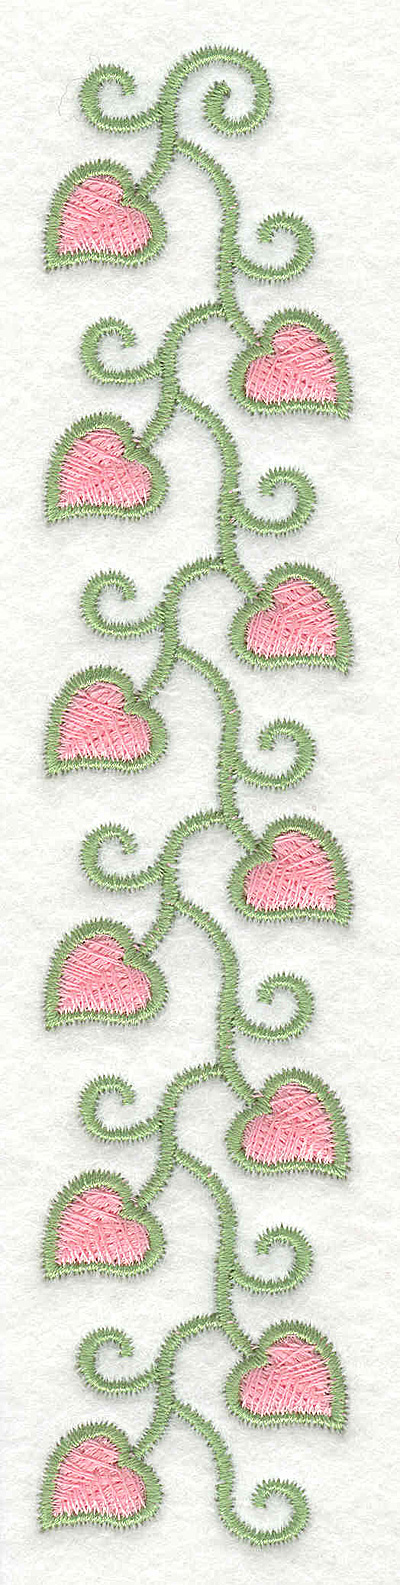 Embroidery Design: Fancy Heart Vine Long1.36w X 6.61h